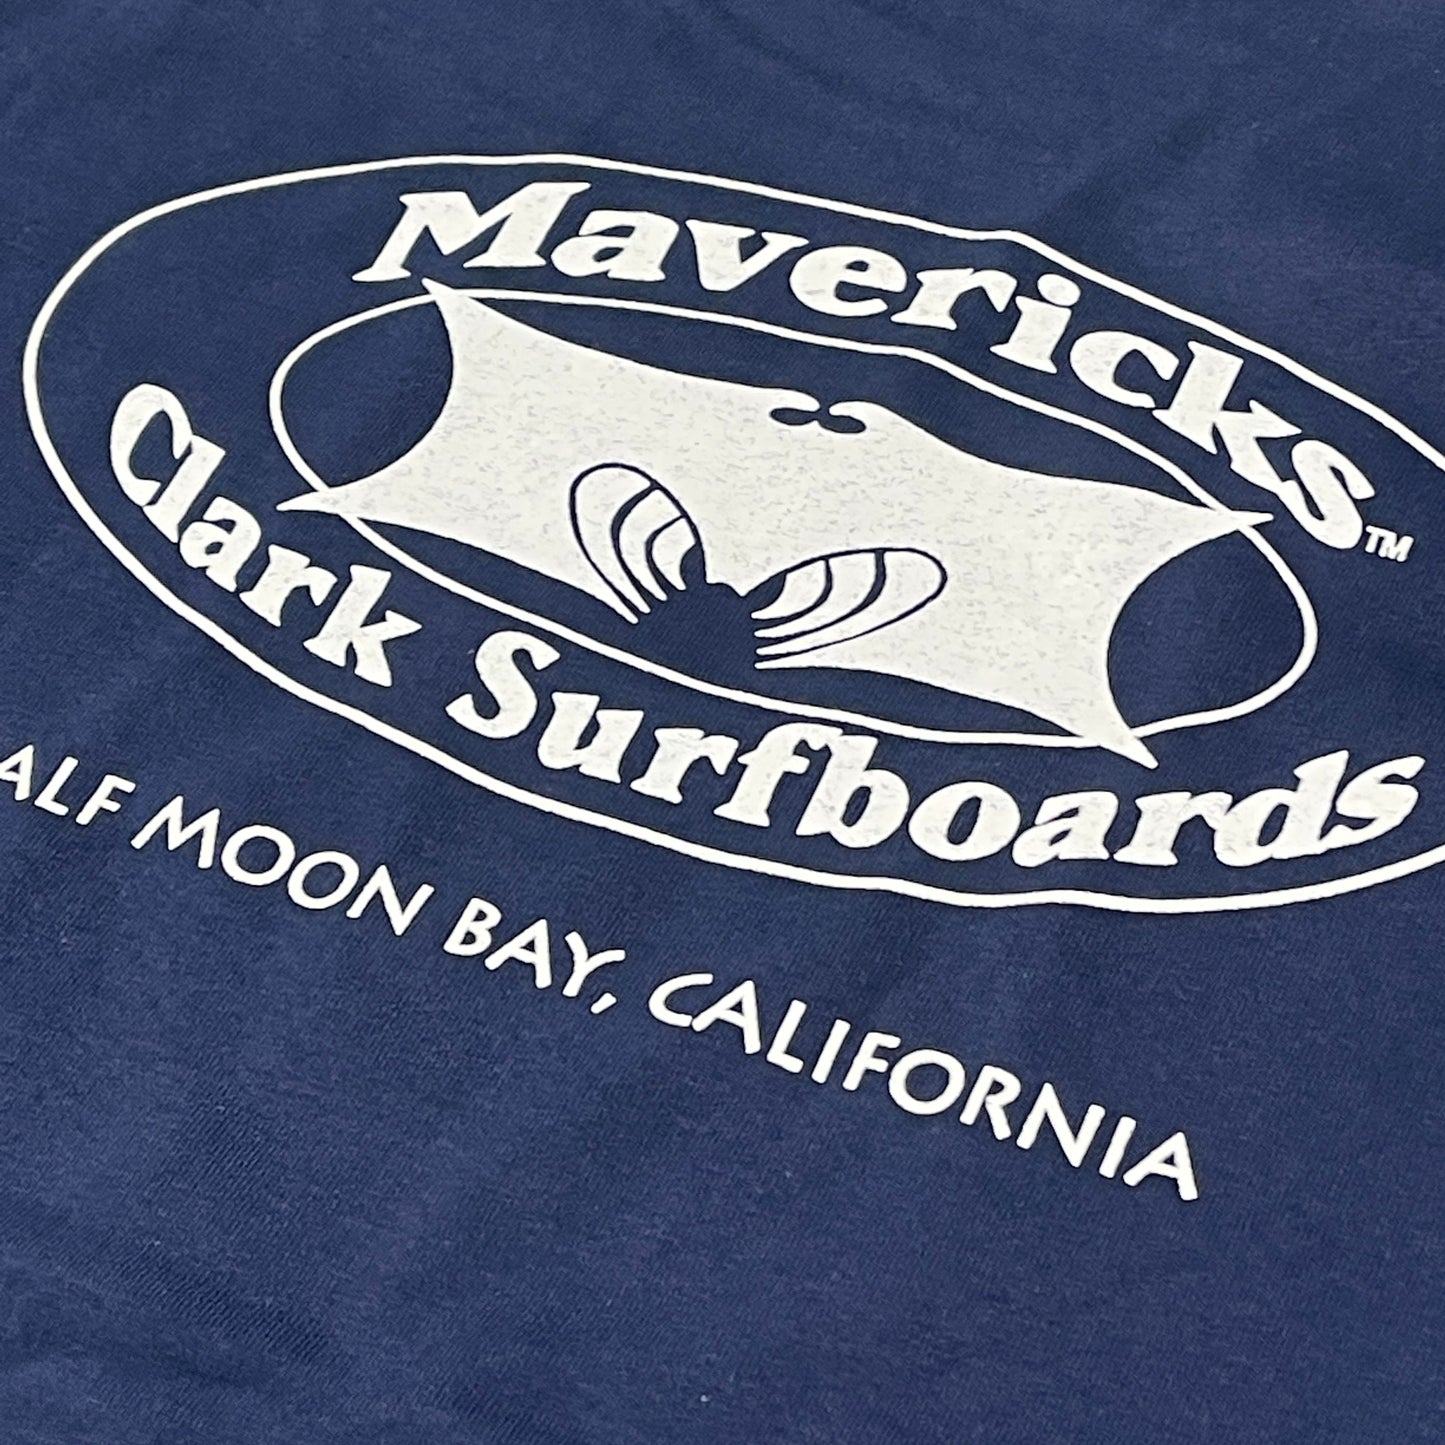 MAVERICKS CLARK SURFBOARDS T-Shirt Men's Sz 2XL Navy Blue Hanes Tagless (New)